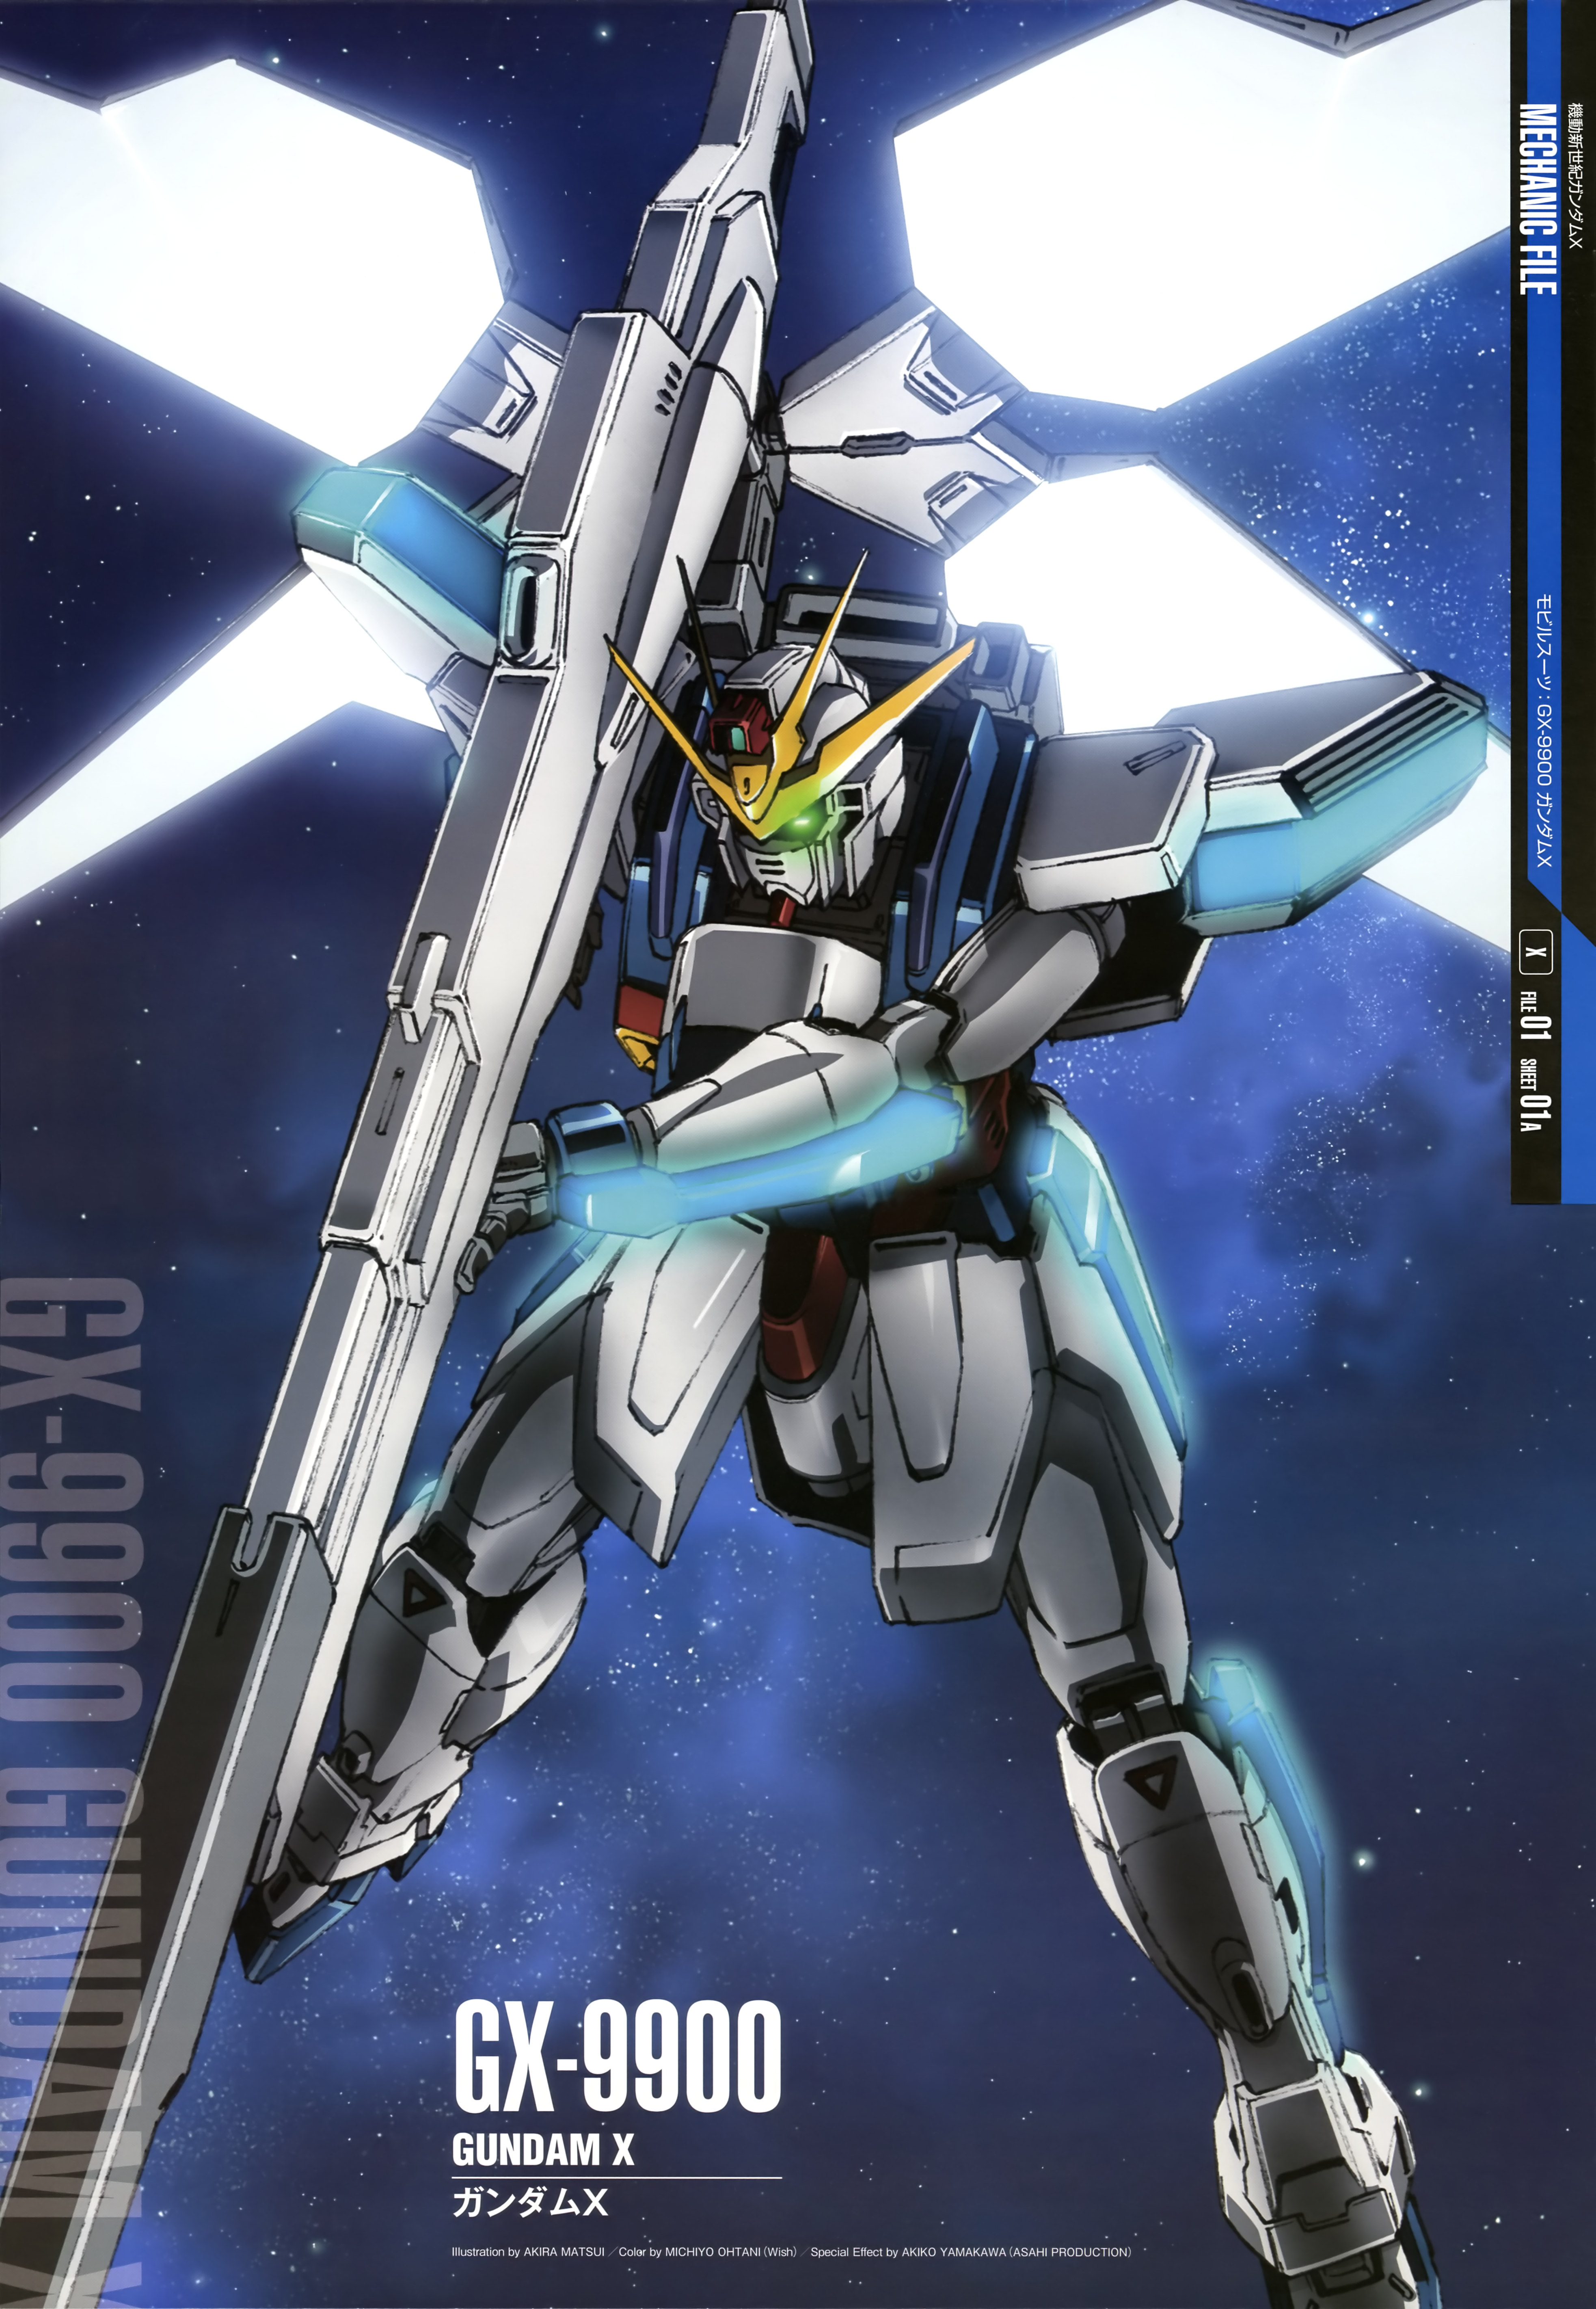 Anime 3931x5686 Gundam X After War Gundam X Gundam anime mechs Super Robot Taisen artwork digital art fan art